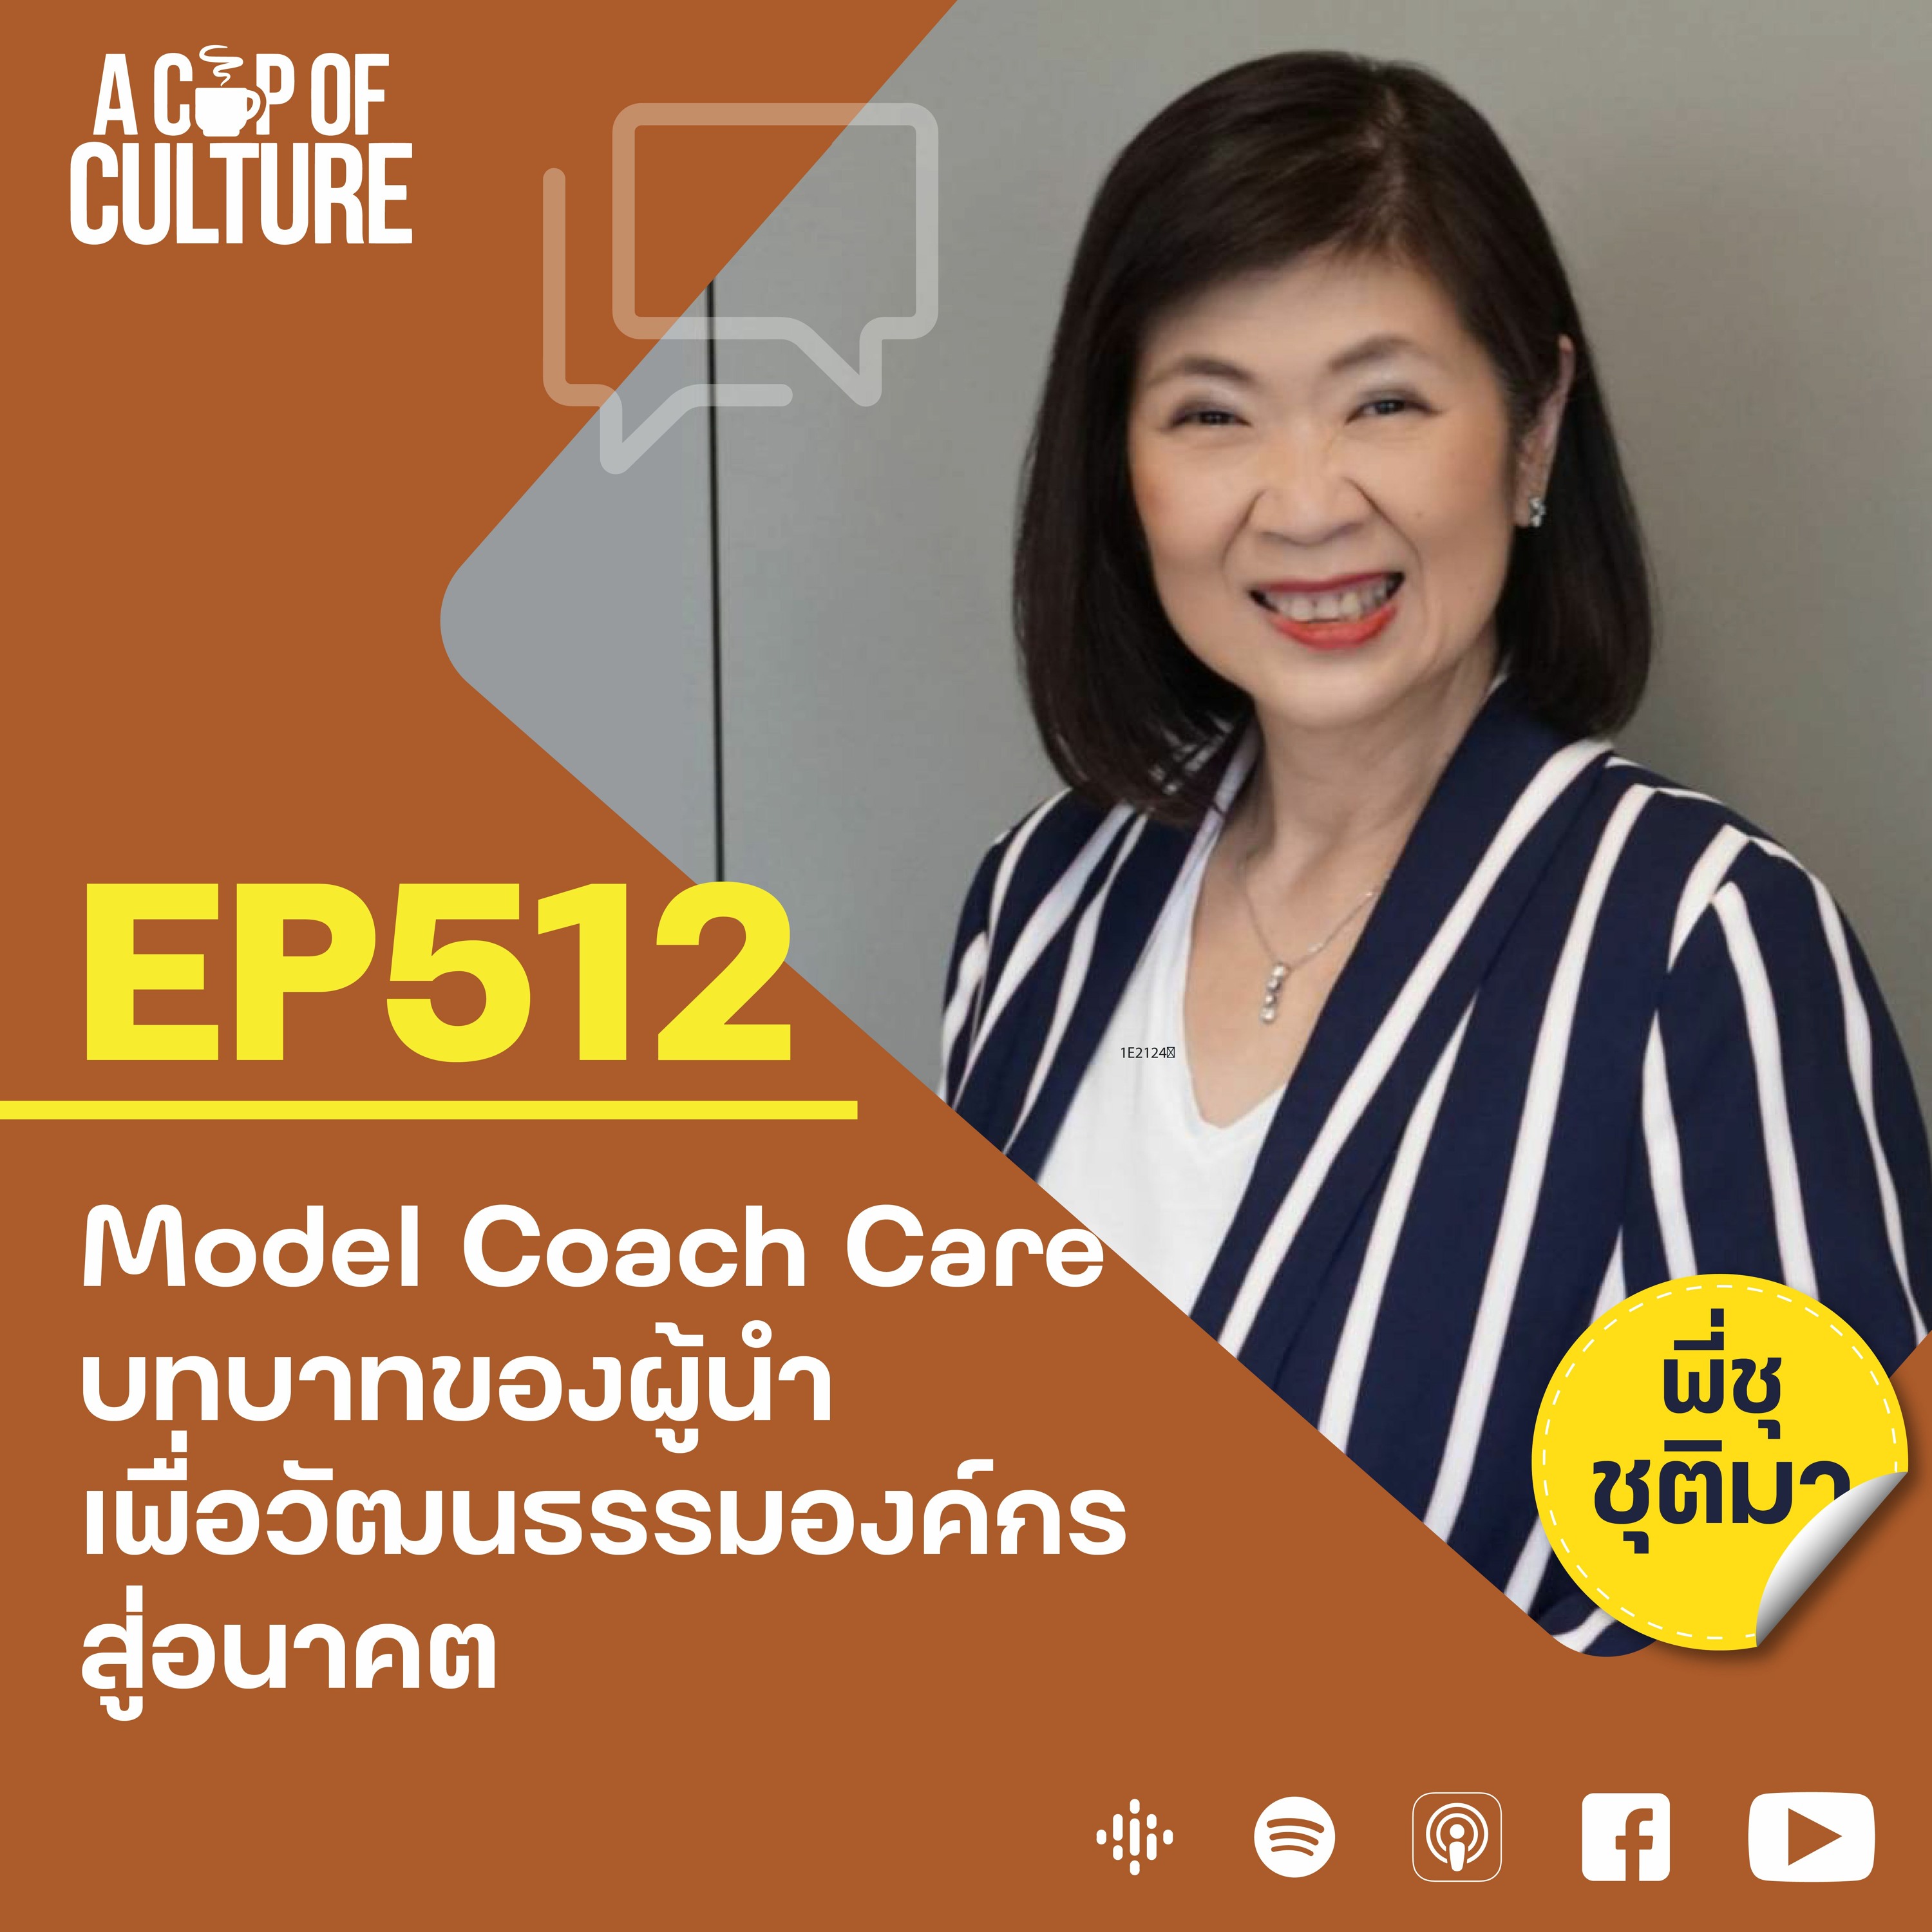 EP512 Model Coach Care บทบาทของผู้นำเพื่อวัฒนธรรมองค์กรสู่อนาคต